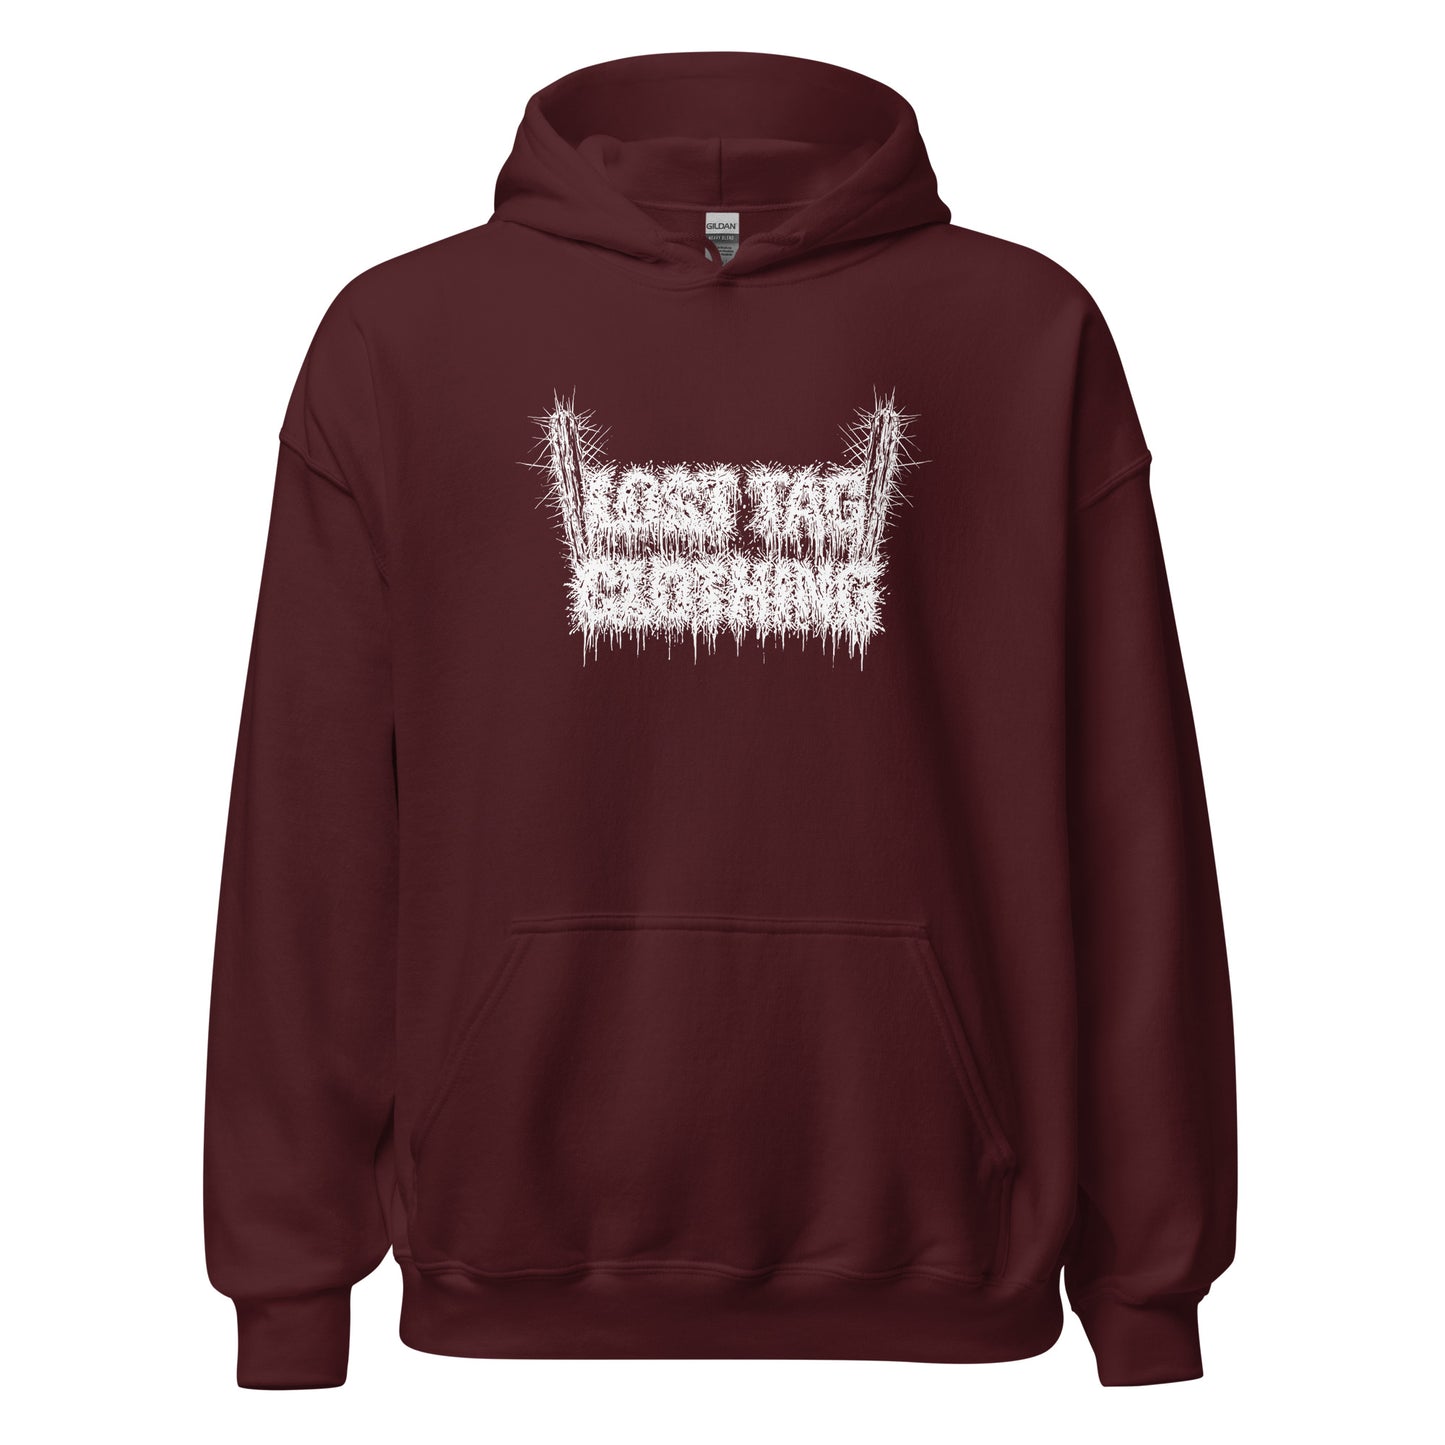 Lost Tag unisex hoodie